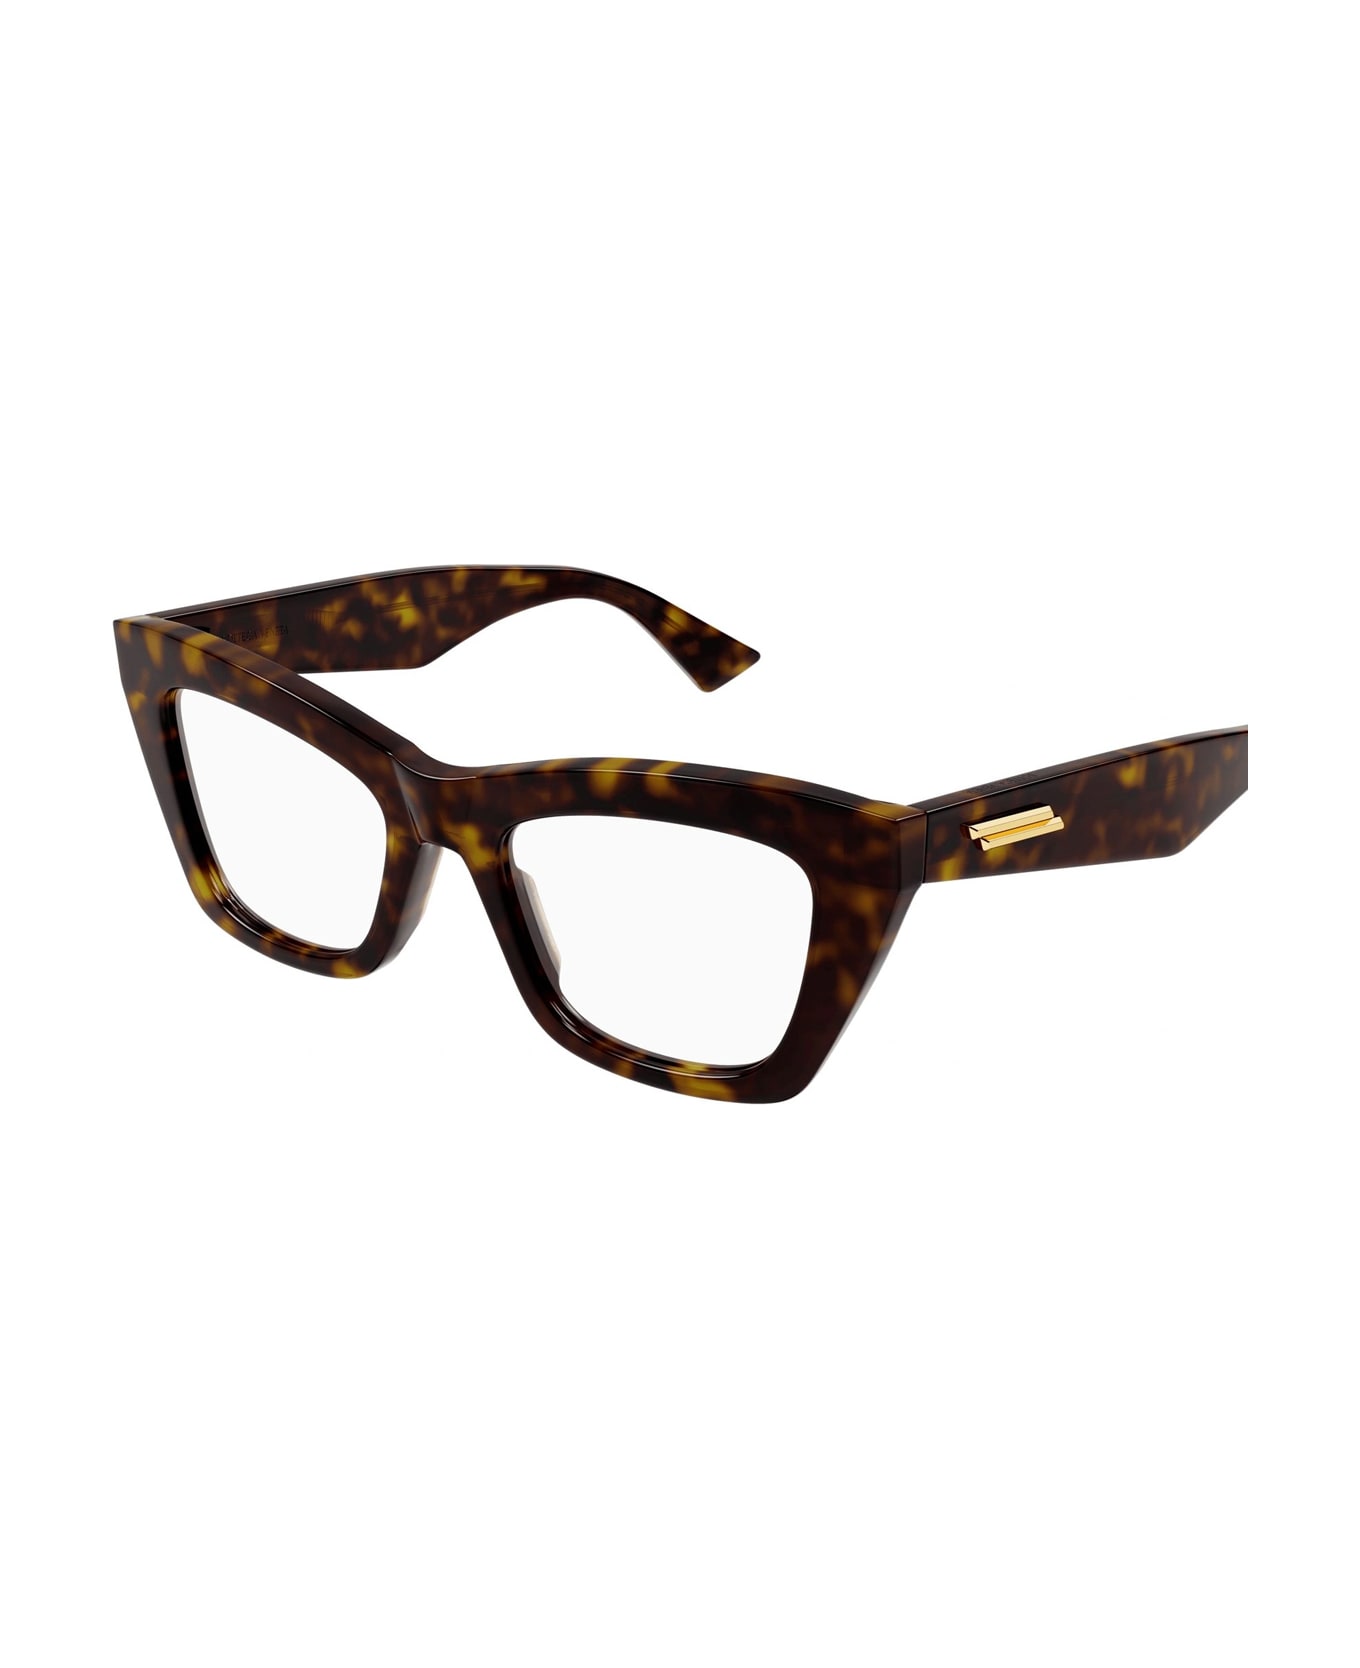 Bottega Veneta Eyewear Bv1215o 002 Glasses - Marrone アイウェア